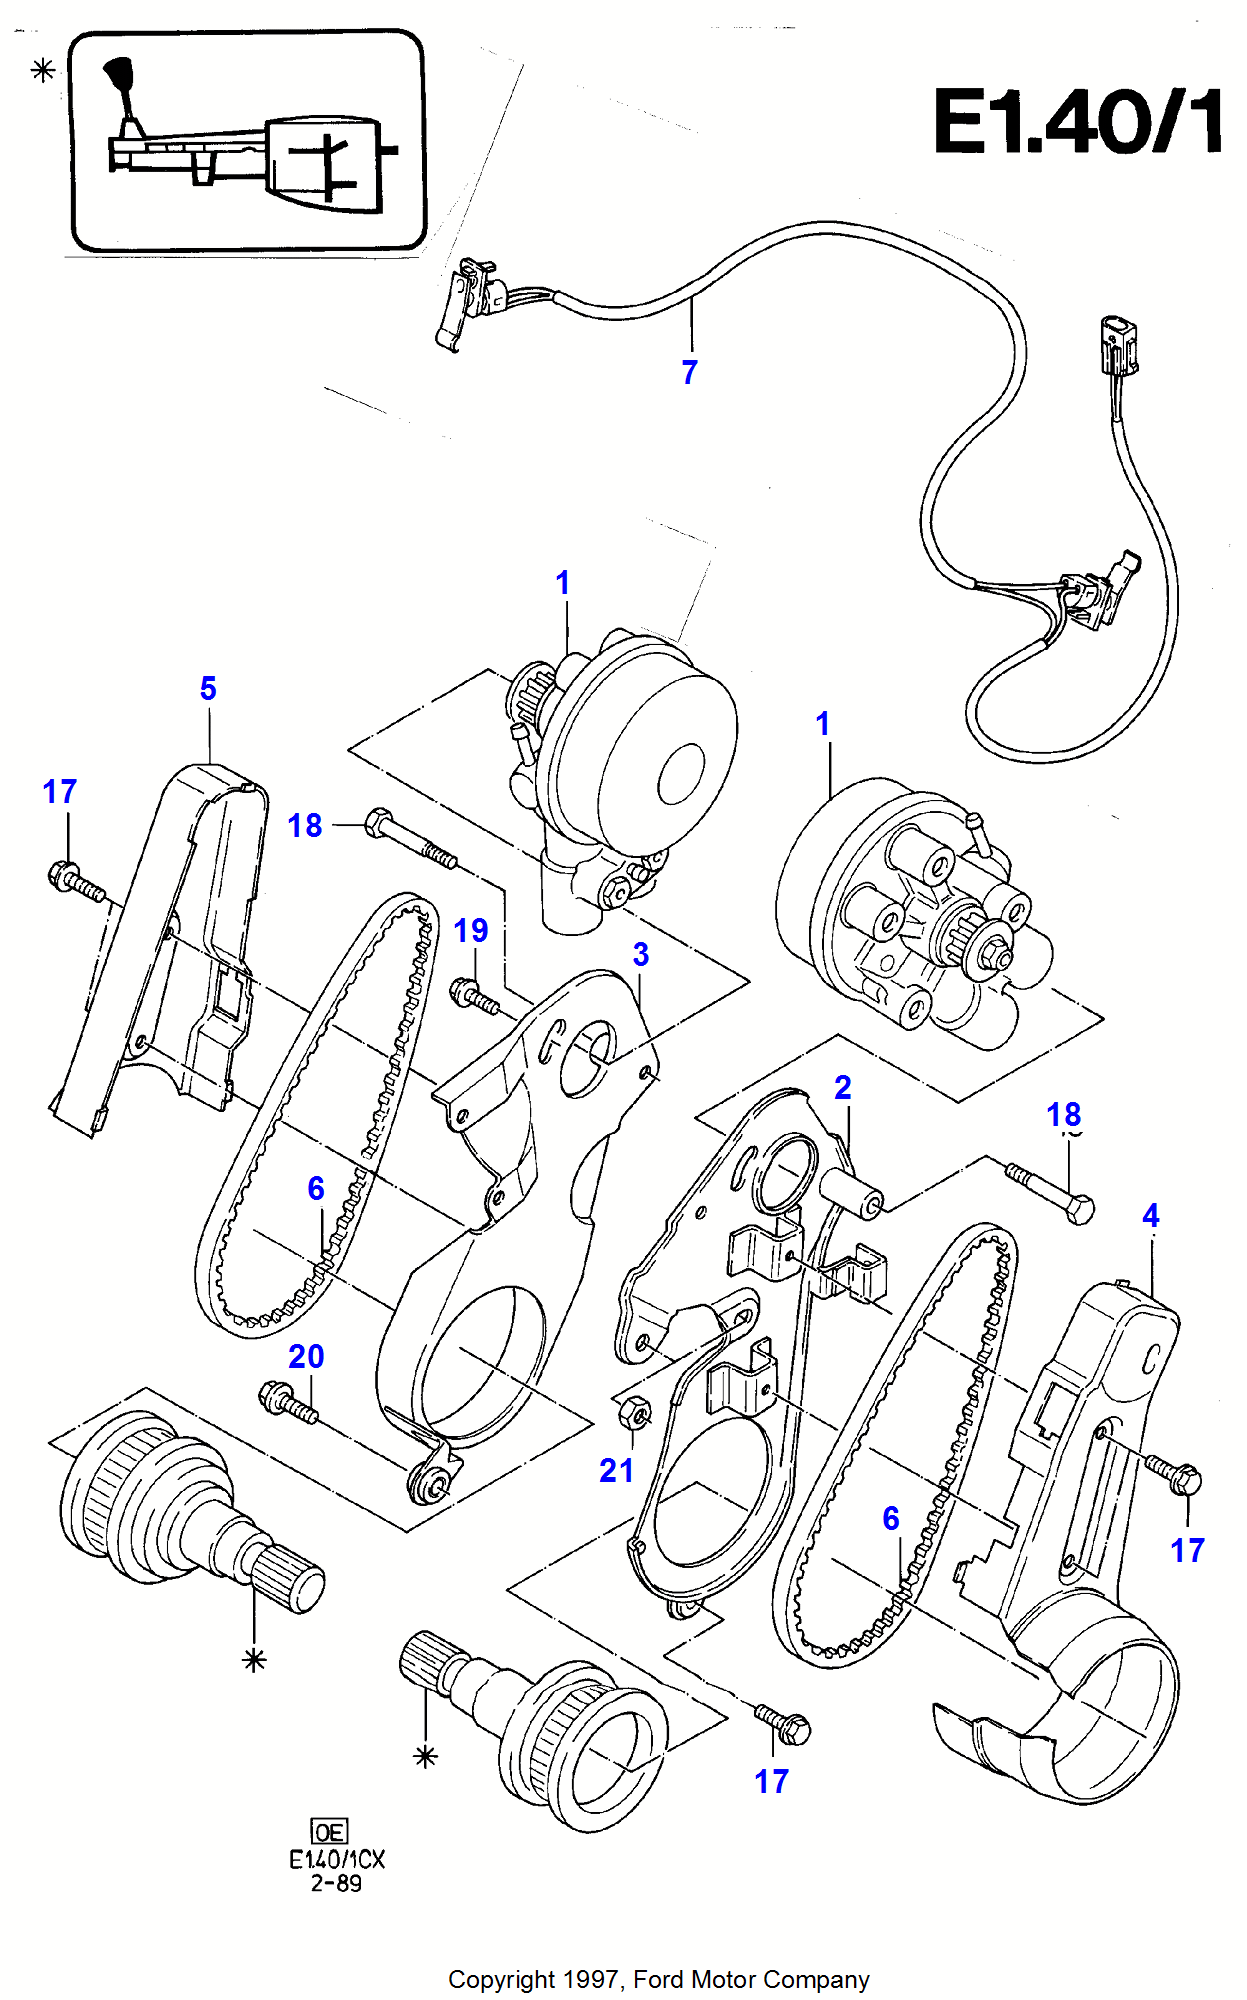 Anti-Lock Braking System pre Ford Fiesta Fiesta 1989-1996               (CX)